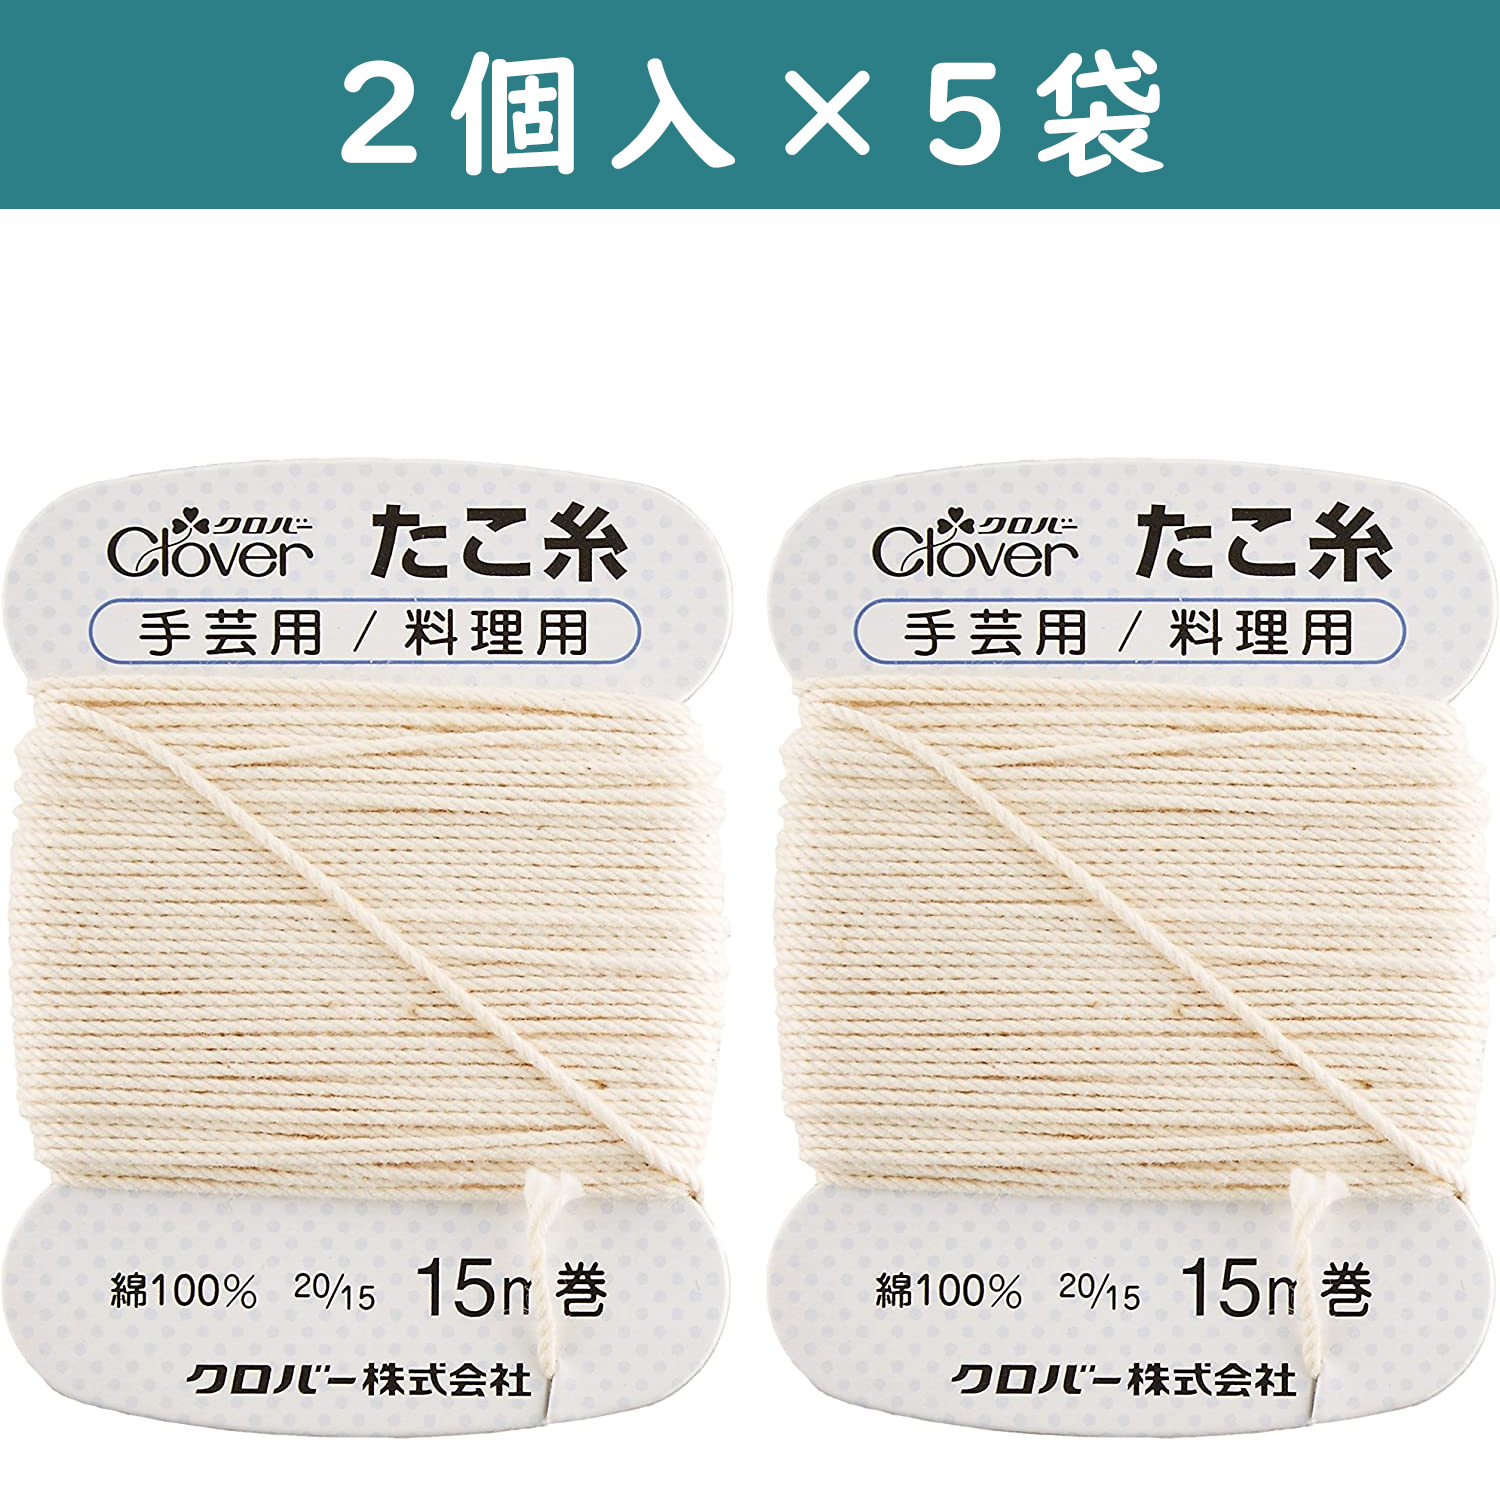 ■【5個】CL26-579-5set たこ糸 15g巻 2個入り ×5個　(セット)